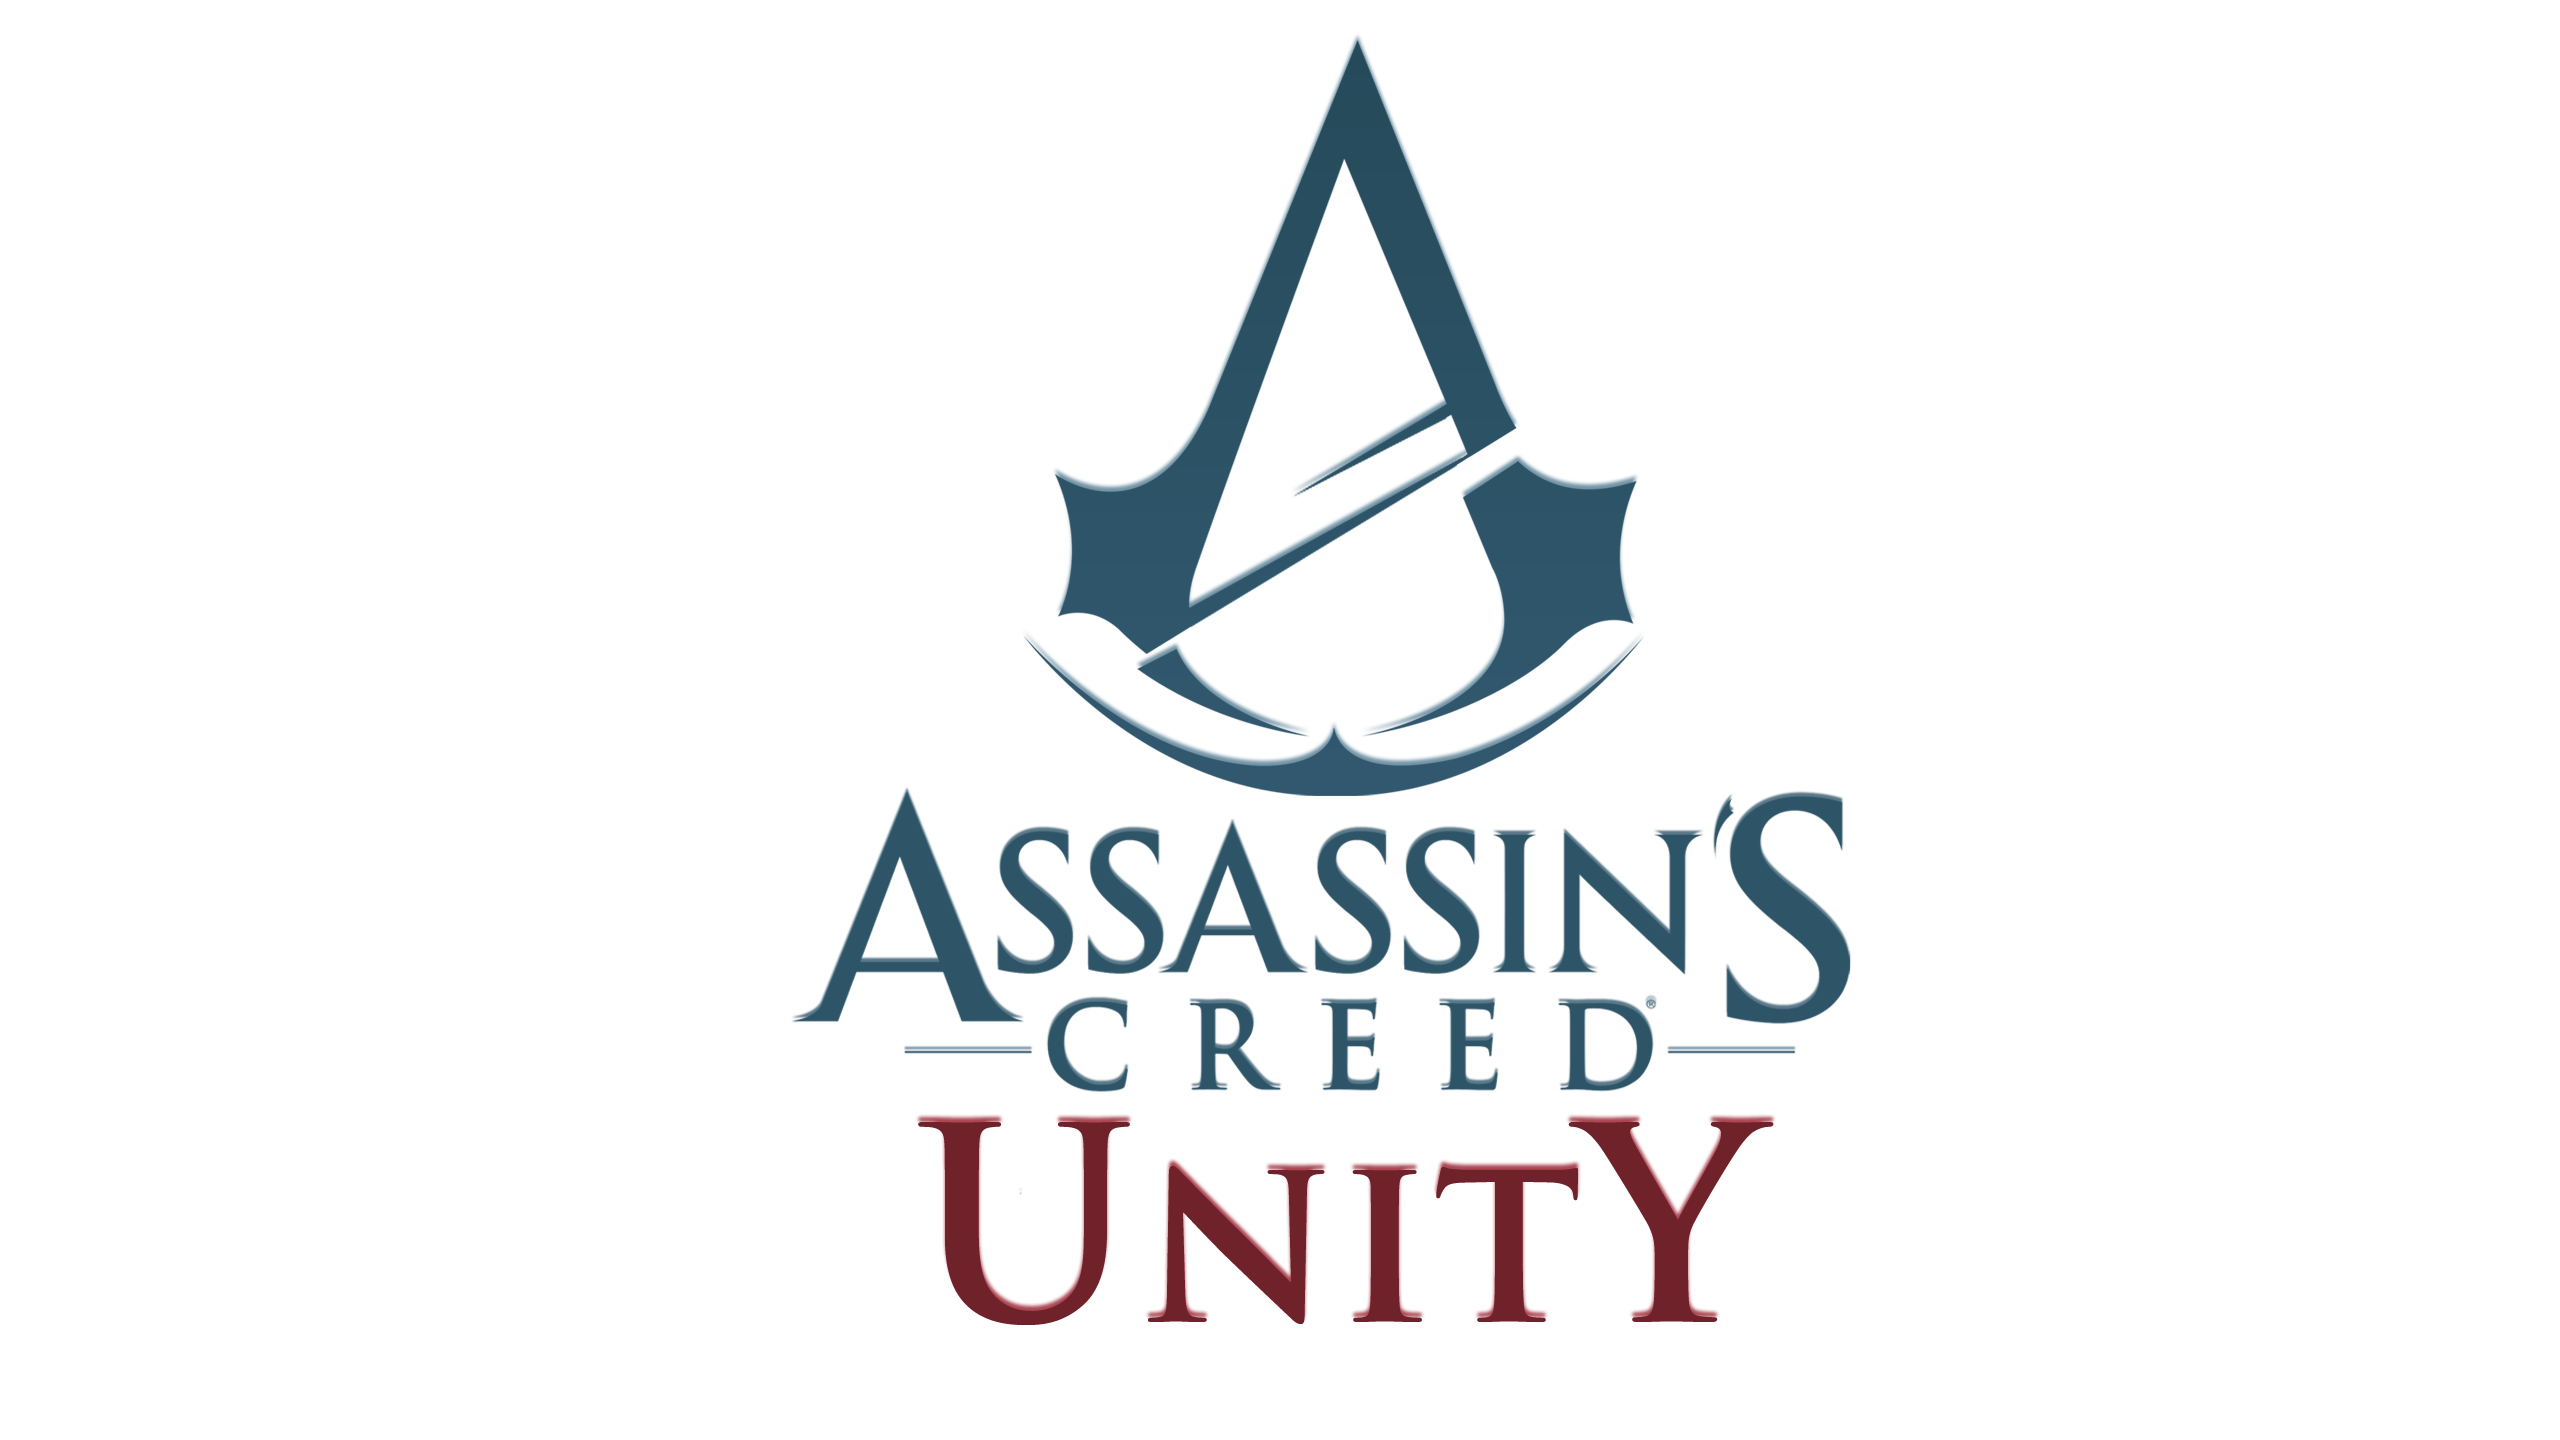 Assassins Creed Unity Clipart Hd Wallpaper - Assassin's Creed Unity Png , HD Wallpaper & Backgrounds